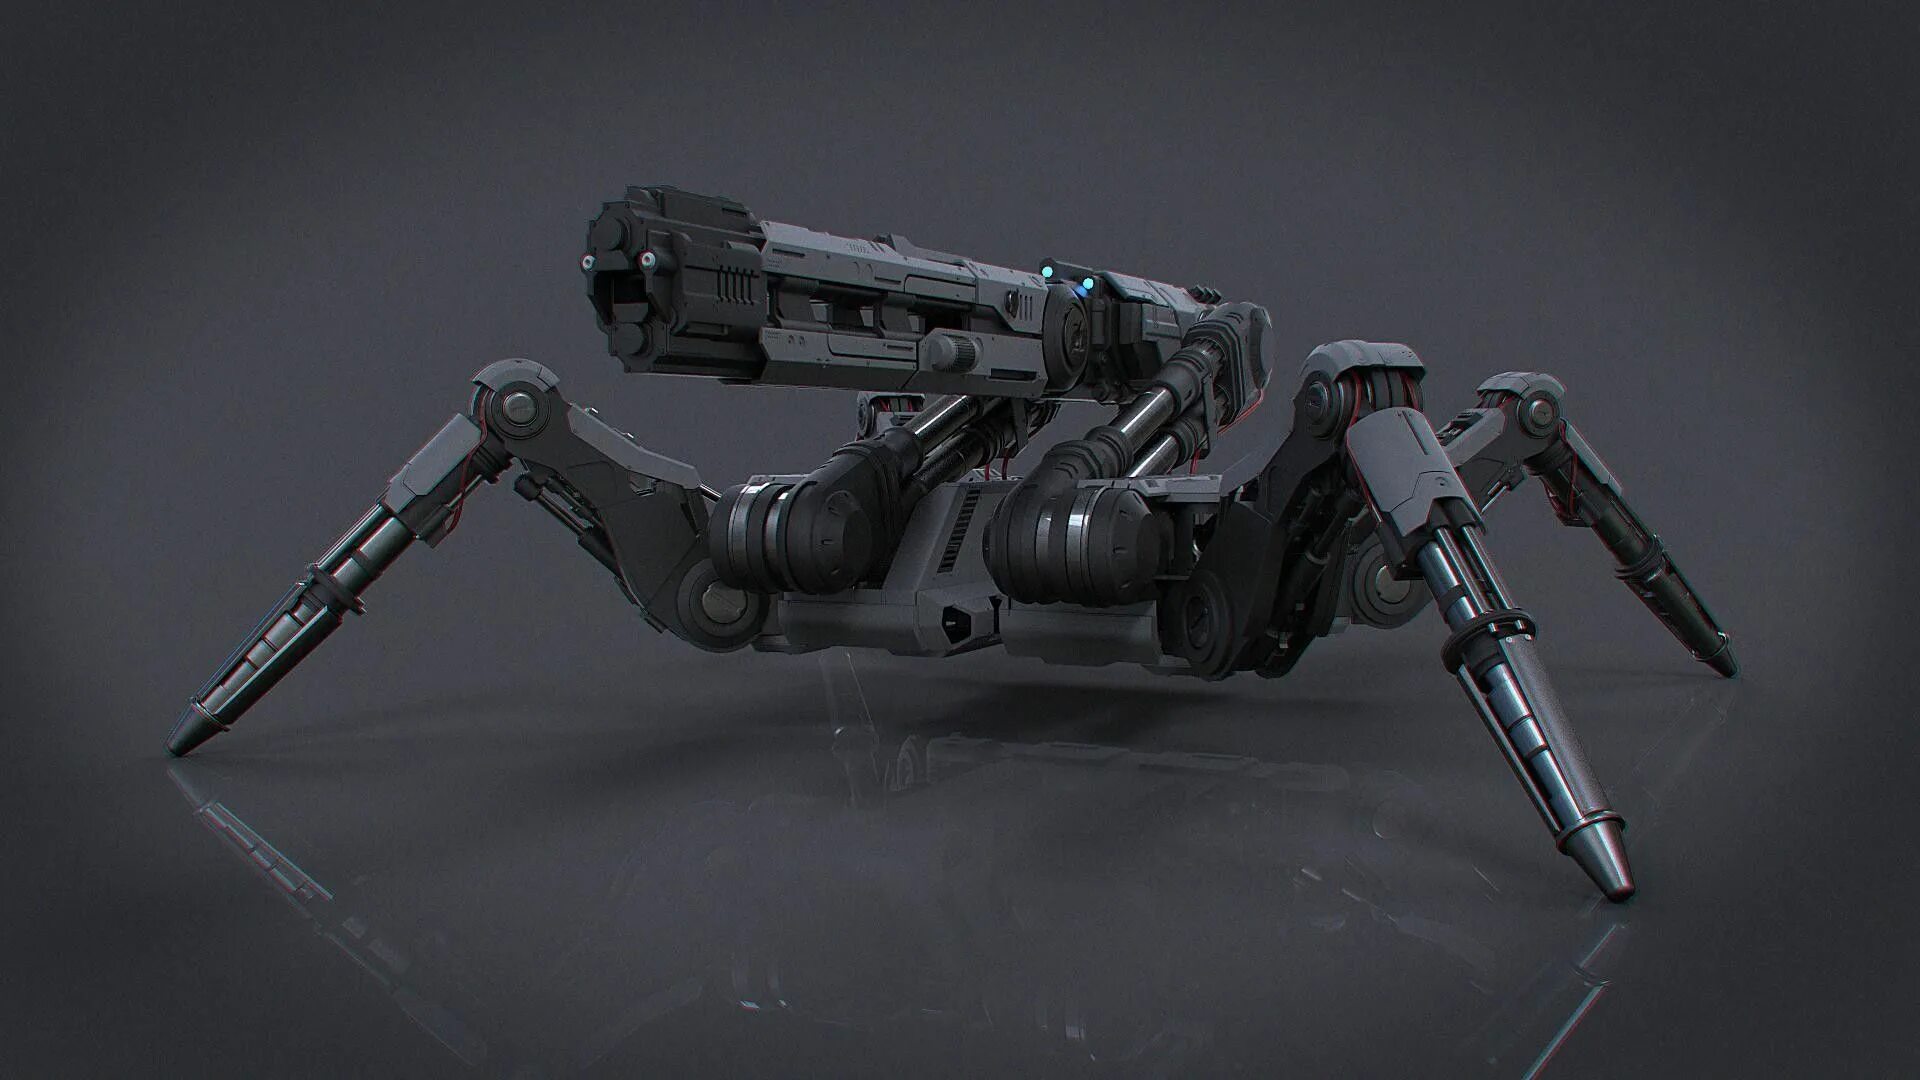 Ступенчатый робот. Мех Sci-Fi турель. Боевые дроиды концепт. Рой дронов киберпанк. Дроны Скай фай.